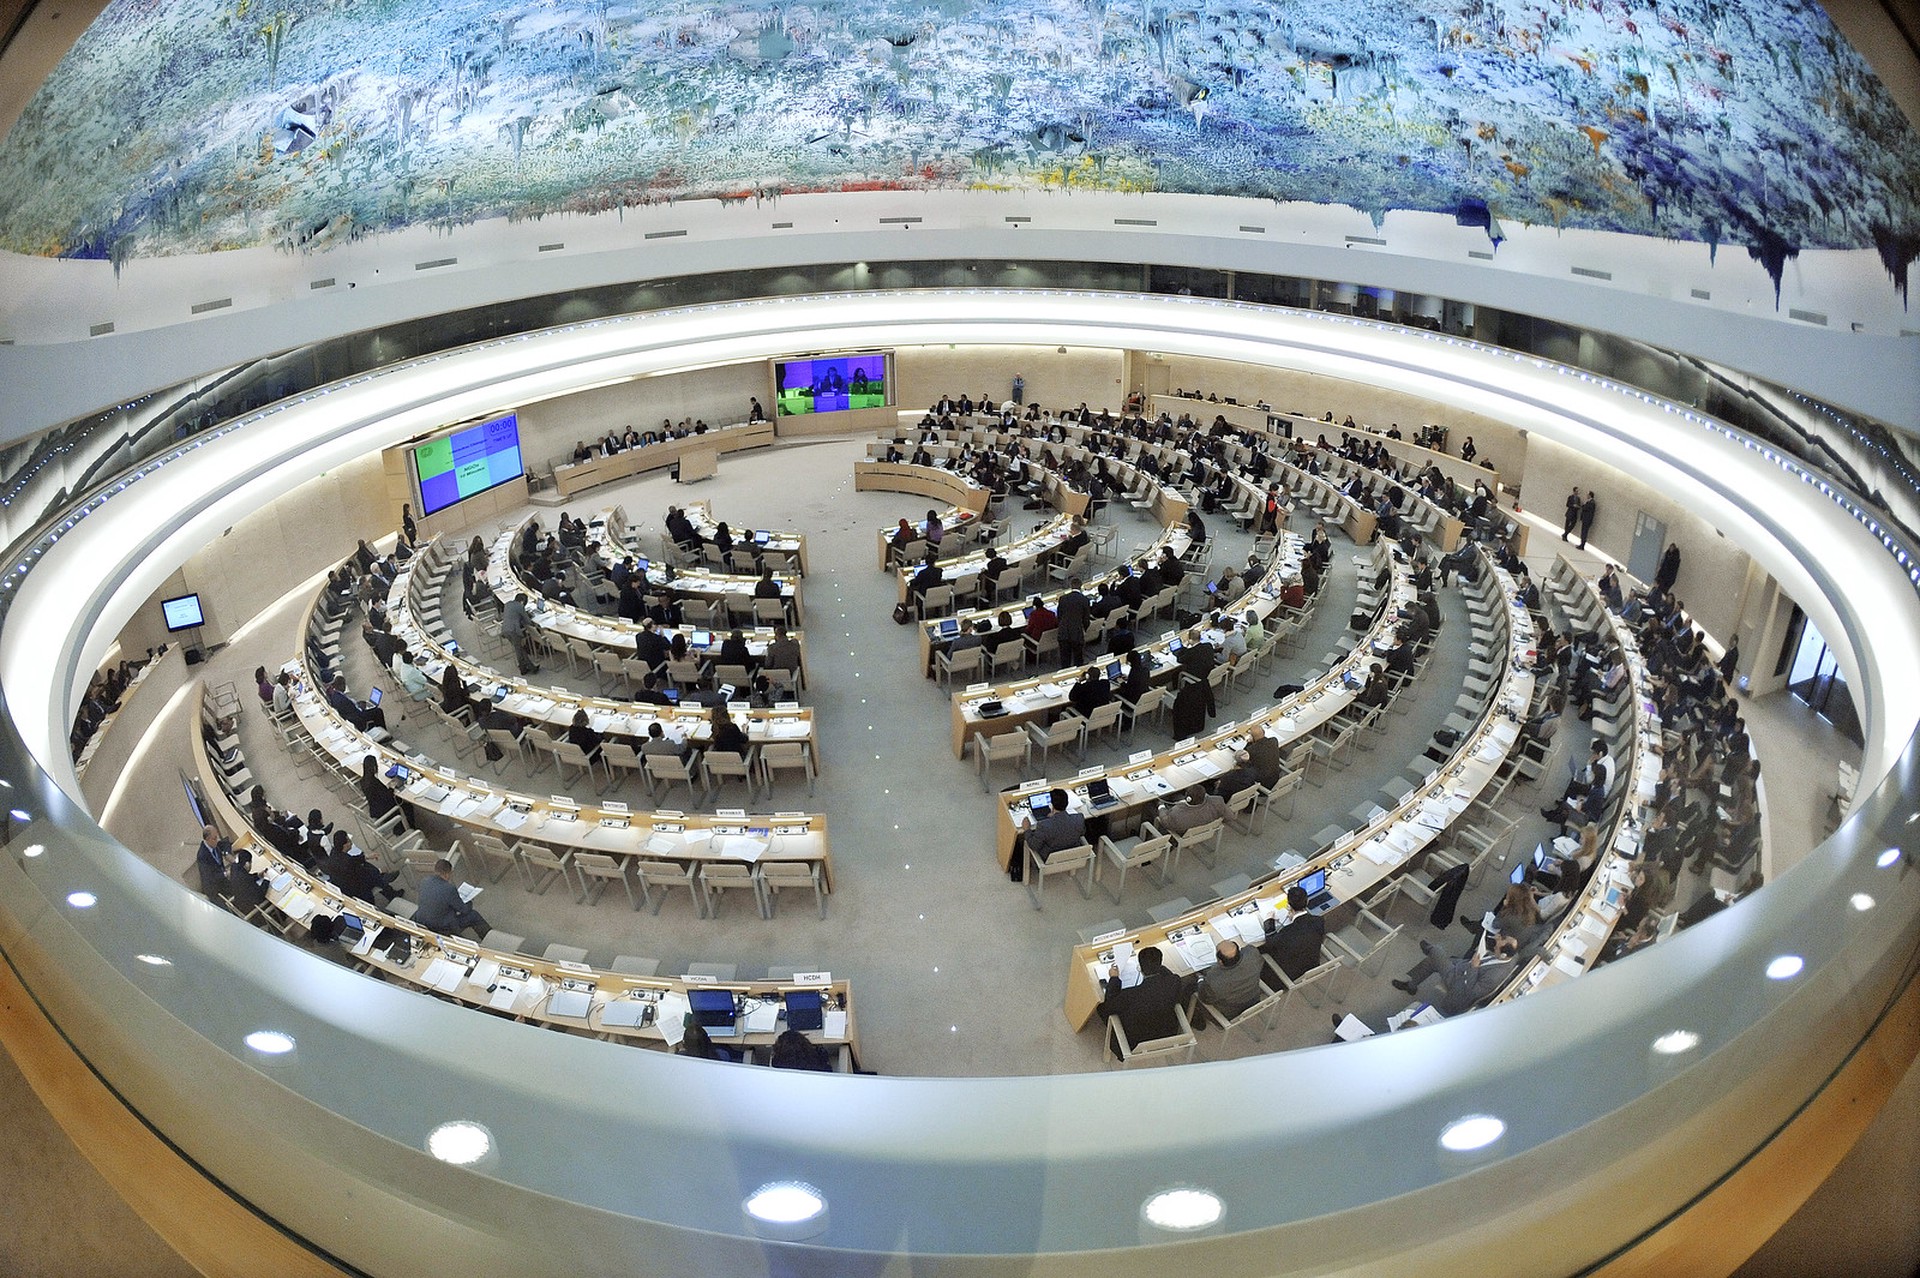 Суд ООН начинает слушания по иску Украины против России о геноциде